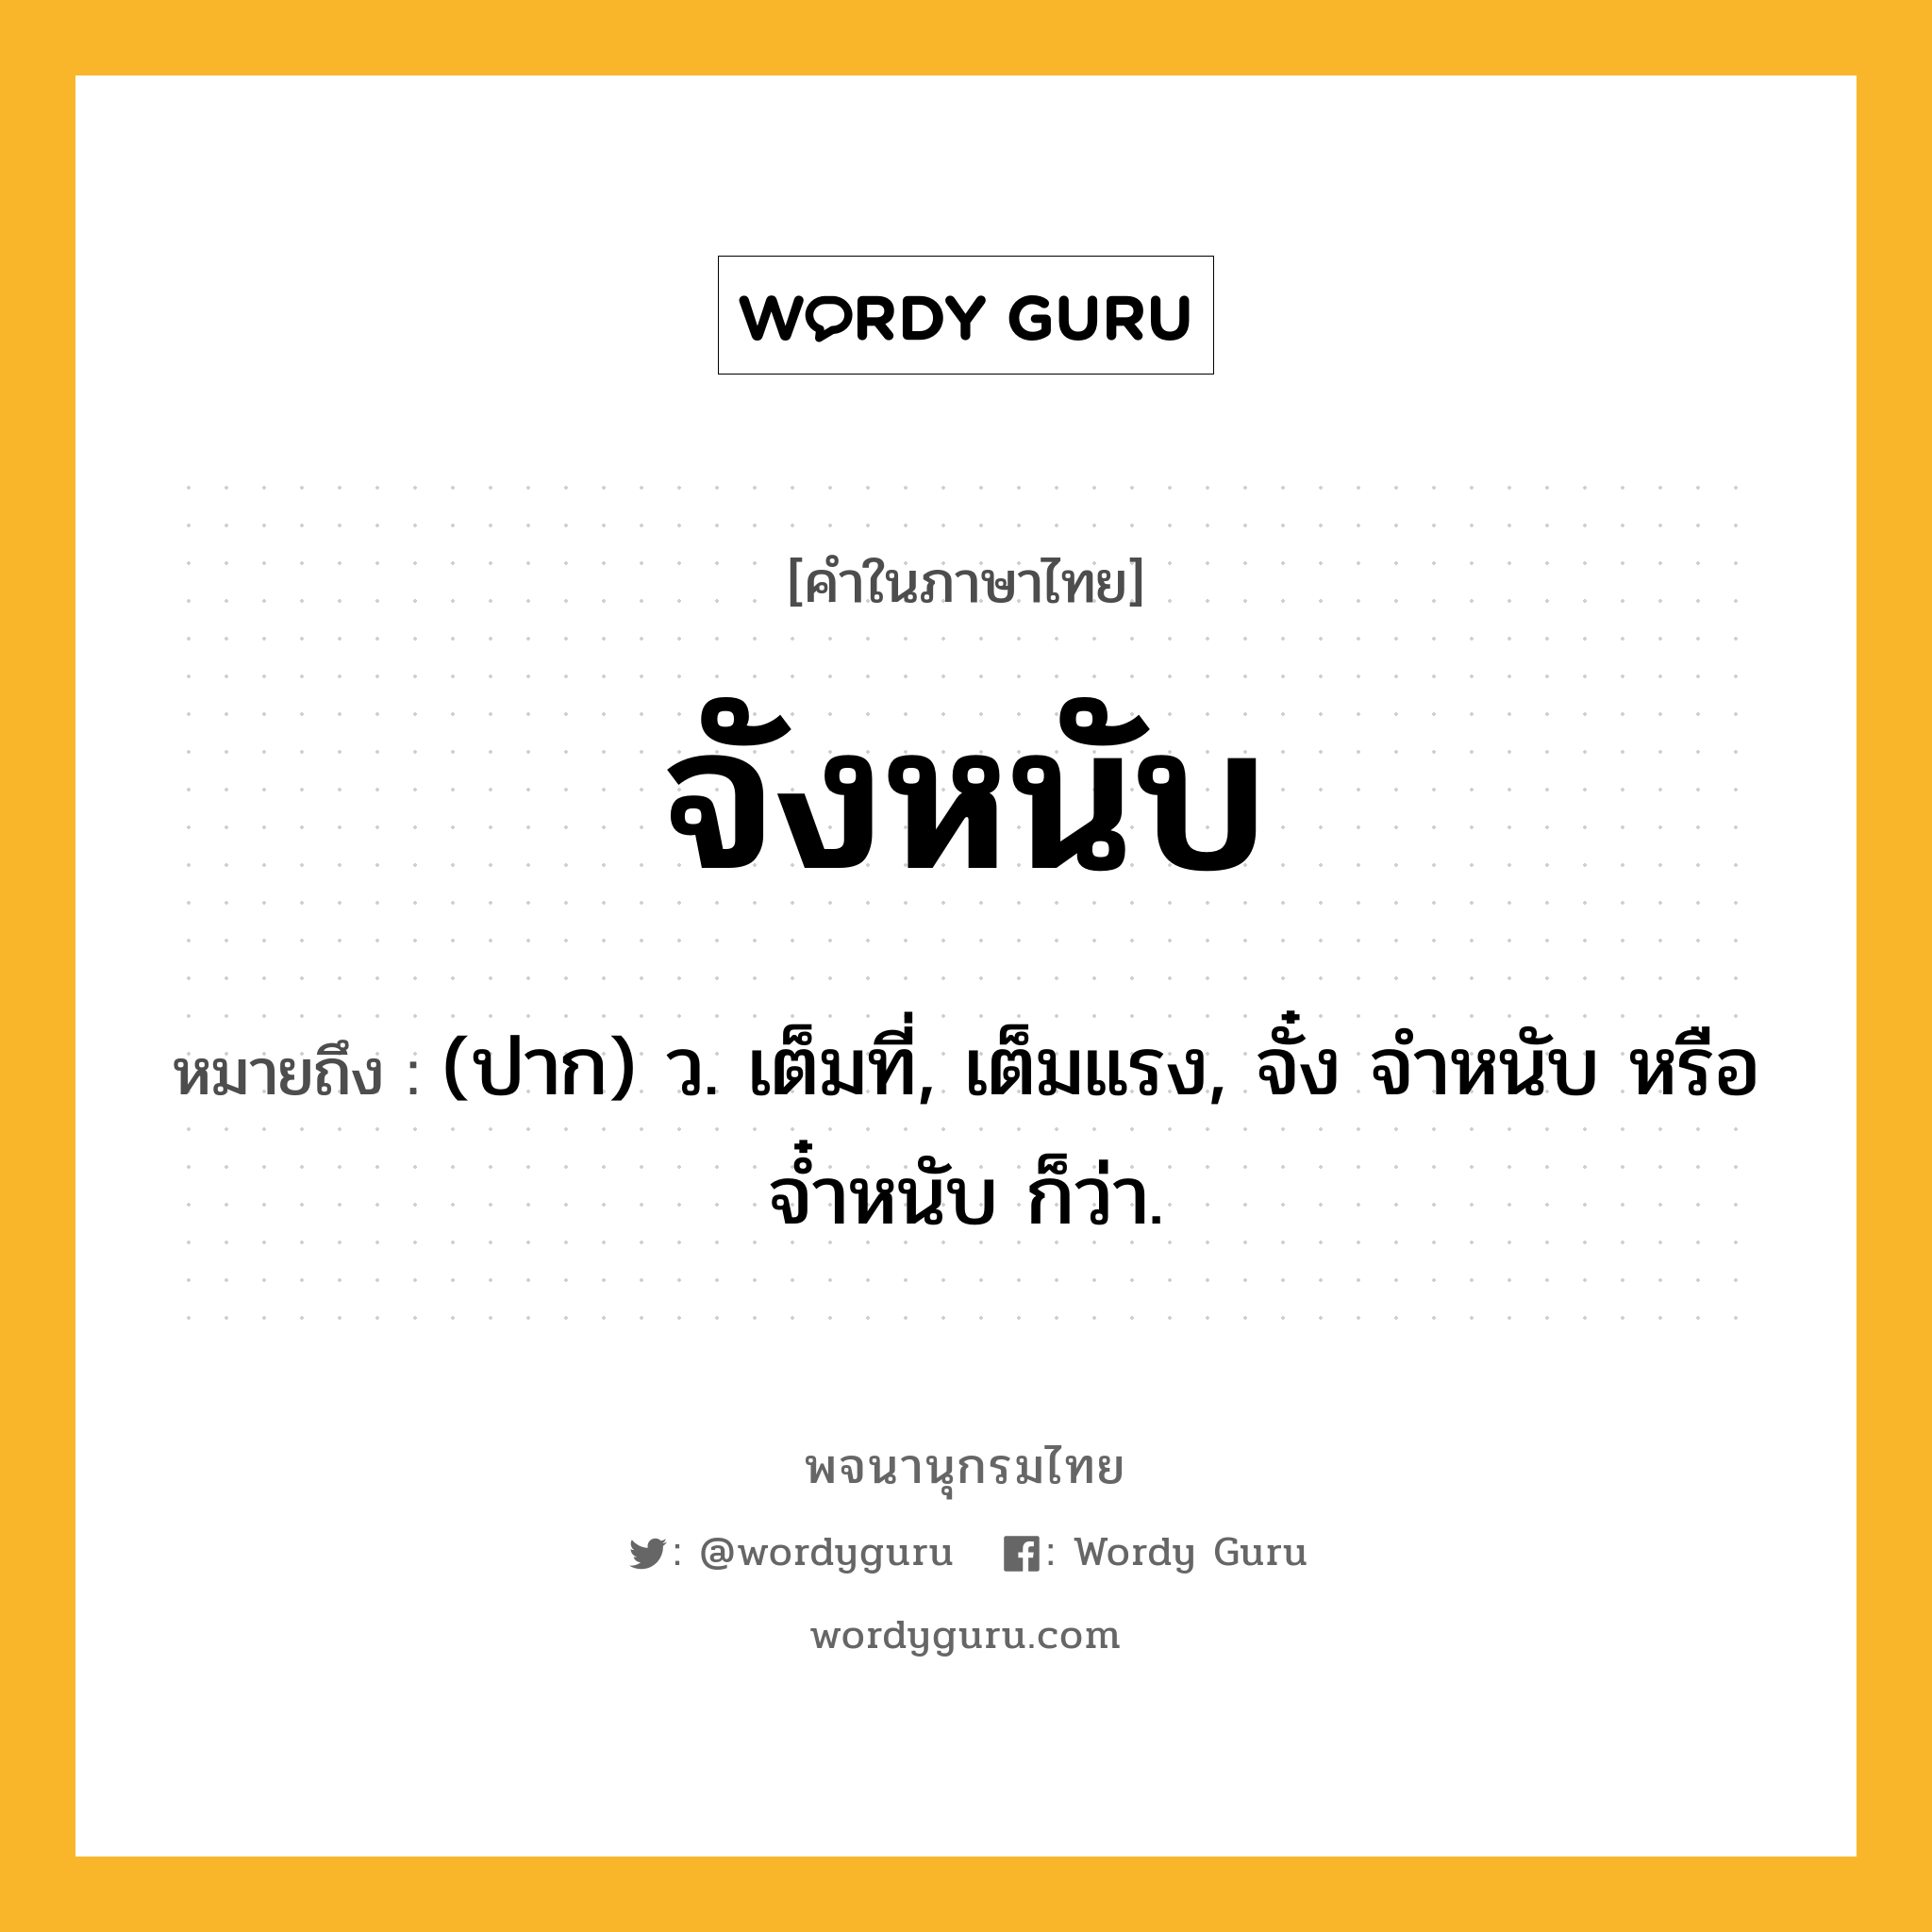 จังหนับ ความหมาย หมายถึงอะไร?, คำในภาษาไทย จังหนับ หมายถึง (ปาก) ว. เต็มที่, เต็มแรง, จั๋ง จำหนับ หรือ จ๋ำหนับ ก็ว่า.